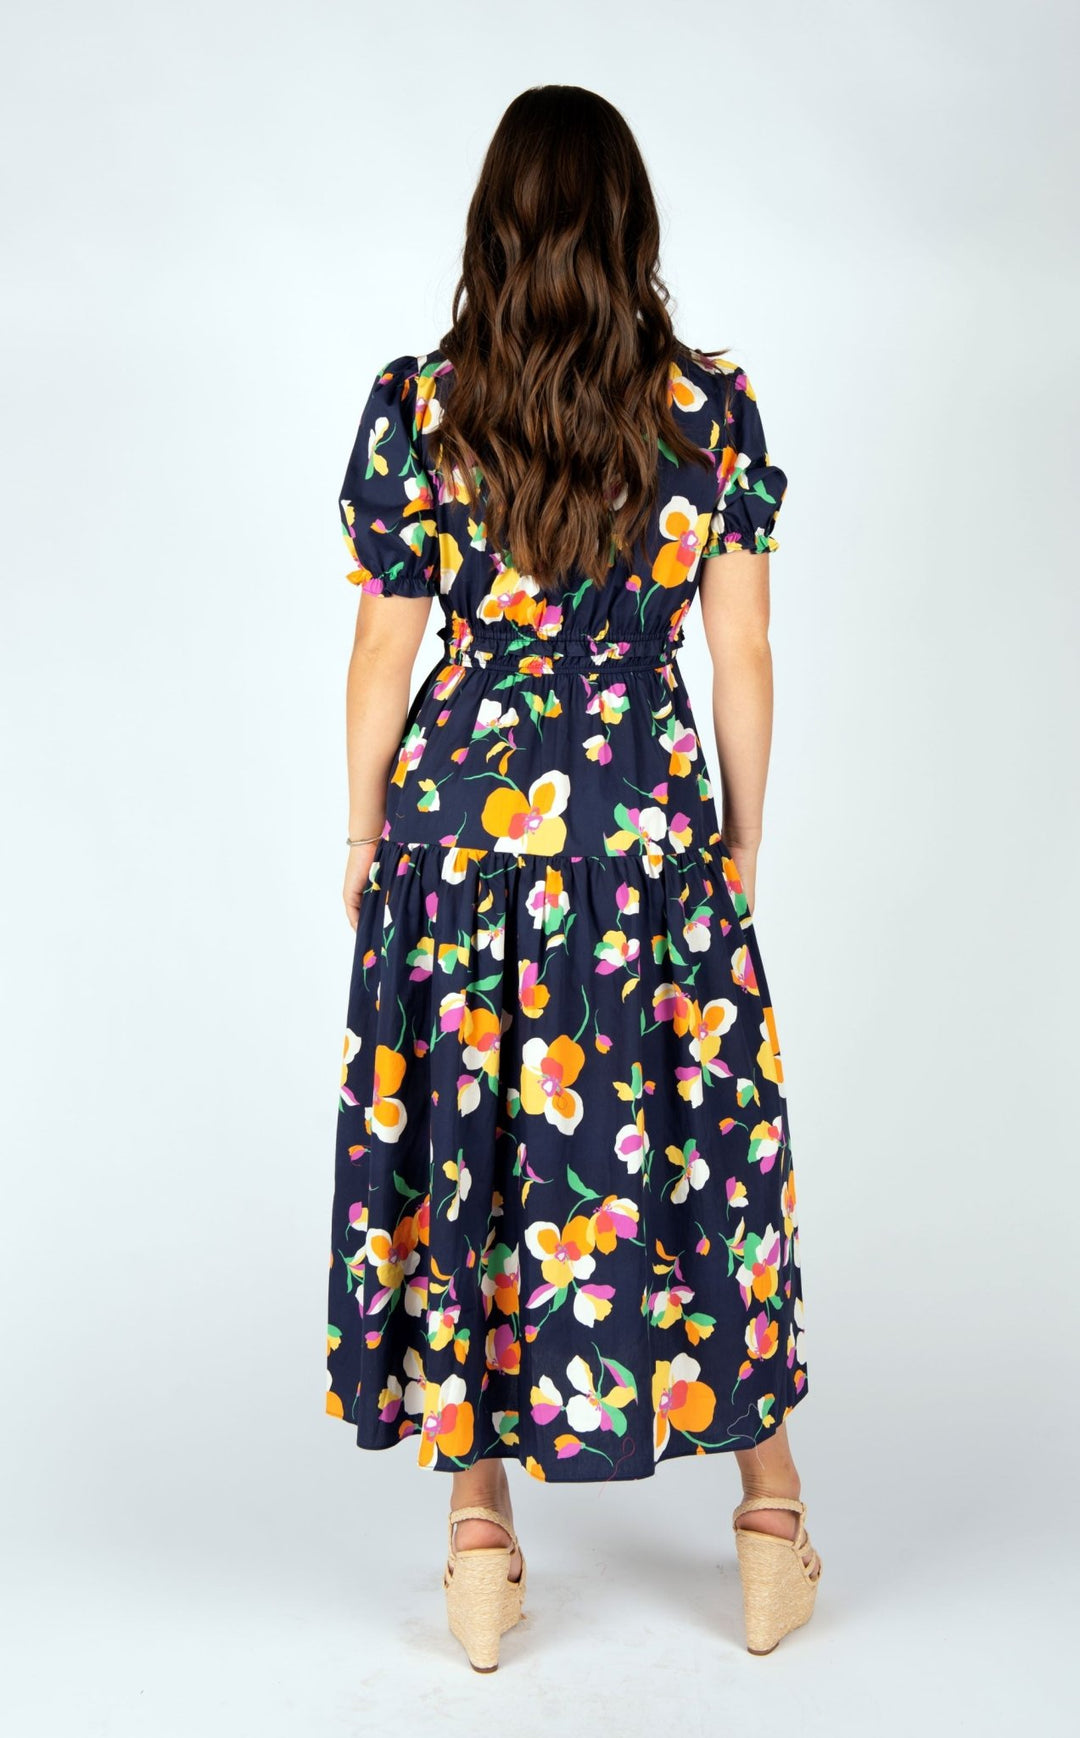 Delphi Dress Azure - Lush Lemon - Women's Clothing - Meet Me In Santorini - 722453952100